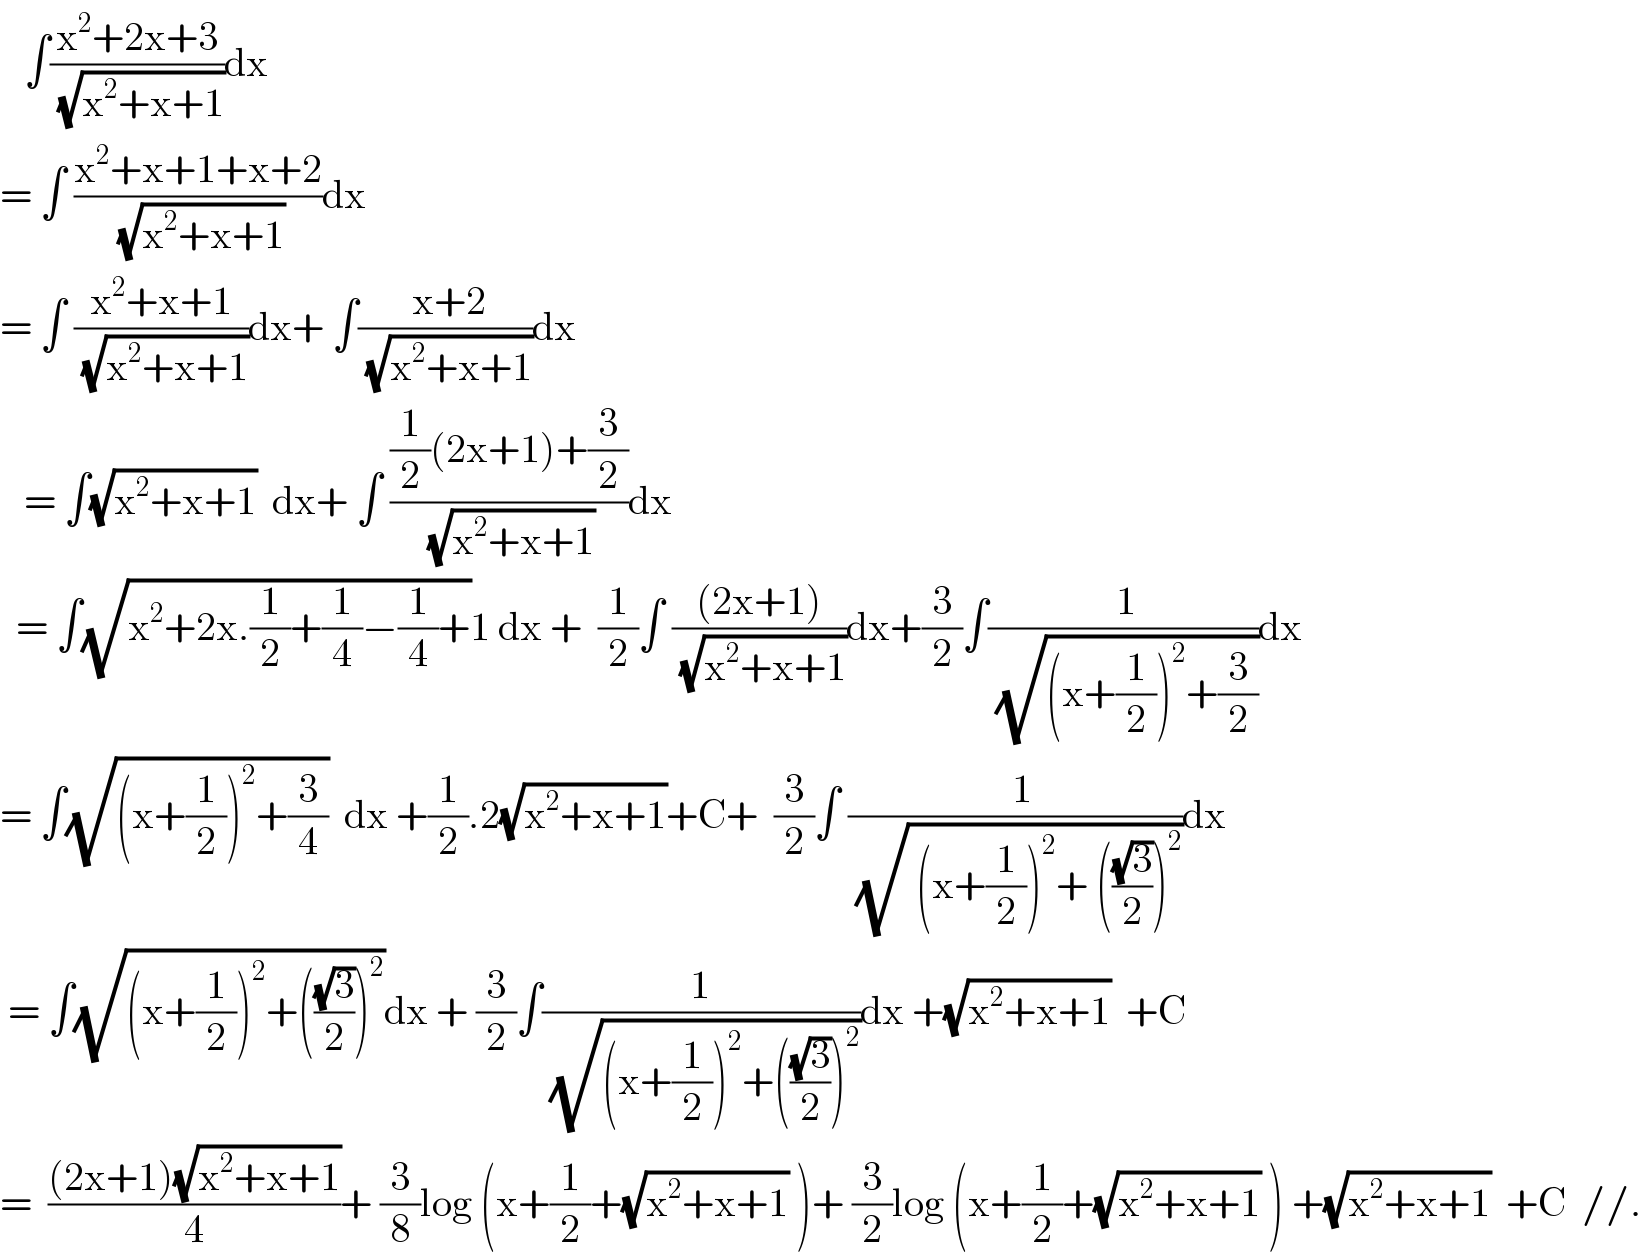    ∫((x^2 +2x+3)/(√(x^2 +x+1)))dx  = ∫ ((x^2 +x+1+x+2)/(√(x^2 +x+1)))dx  = ∫ ((x^2 +x+1)/(√(x^2 +x+1)))dx+ ∫(( x+2)/(√(x^2 +x+1)))dx     = ∫(√(x^2 +x+1))  dx+ ∫ (((1/2)(2x+1)+(3/2))/(√(x^2 +x+1)))dx    = ∫(√(x^2 +2x.(1/2)+(1/4)−(1/4)+))1 dx +  (1/2)∫ (((2x+1))/(√(x^2 +x+1)))dx+(3/2)∫(( 1)/(√((x+(1/2))^2 +(3/2))))dx  = ∫(√((x+(1/2))^2 +(3/4)))  dx +(1/2).2(√(x^2 +x+1))+C+  (3/2)∫ ((  1)/(√( (x+(1/2))^2 + (((√3)/2))^2 )))dx   = ∫(√((x+(1/2))^2 +(((√3)/2))^2 ))dx + (3/2)∫(1/(√((x+(1/2))^2 +(((√3)/2))^2 )))dx +(√(x^2 +x+1))  +C  =  (((2x+1)(√(x^2 +x+1)))/4)+ (3/8)log (x+(1/2)+(√(x^2 +x+1)) )+ (3/2)log (x+(1/2)+(√(x^2 +x+1)) ) +(√(x^2 +x+1))  +C  //.  